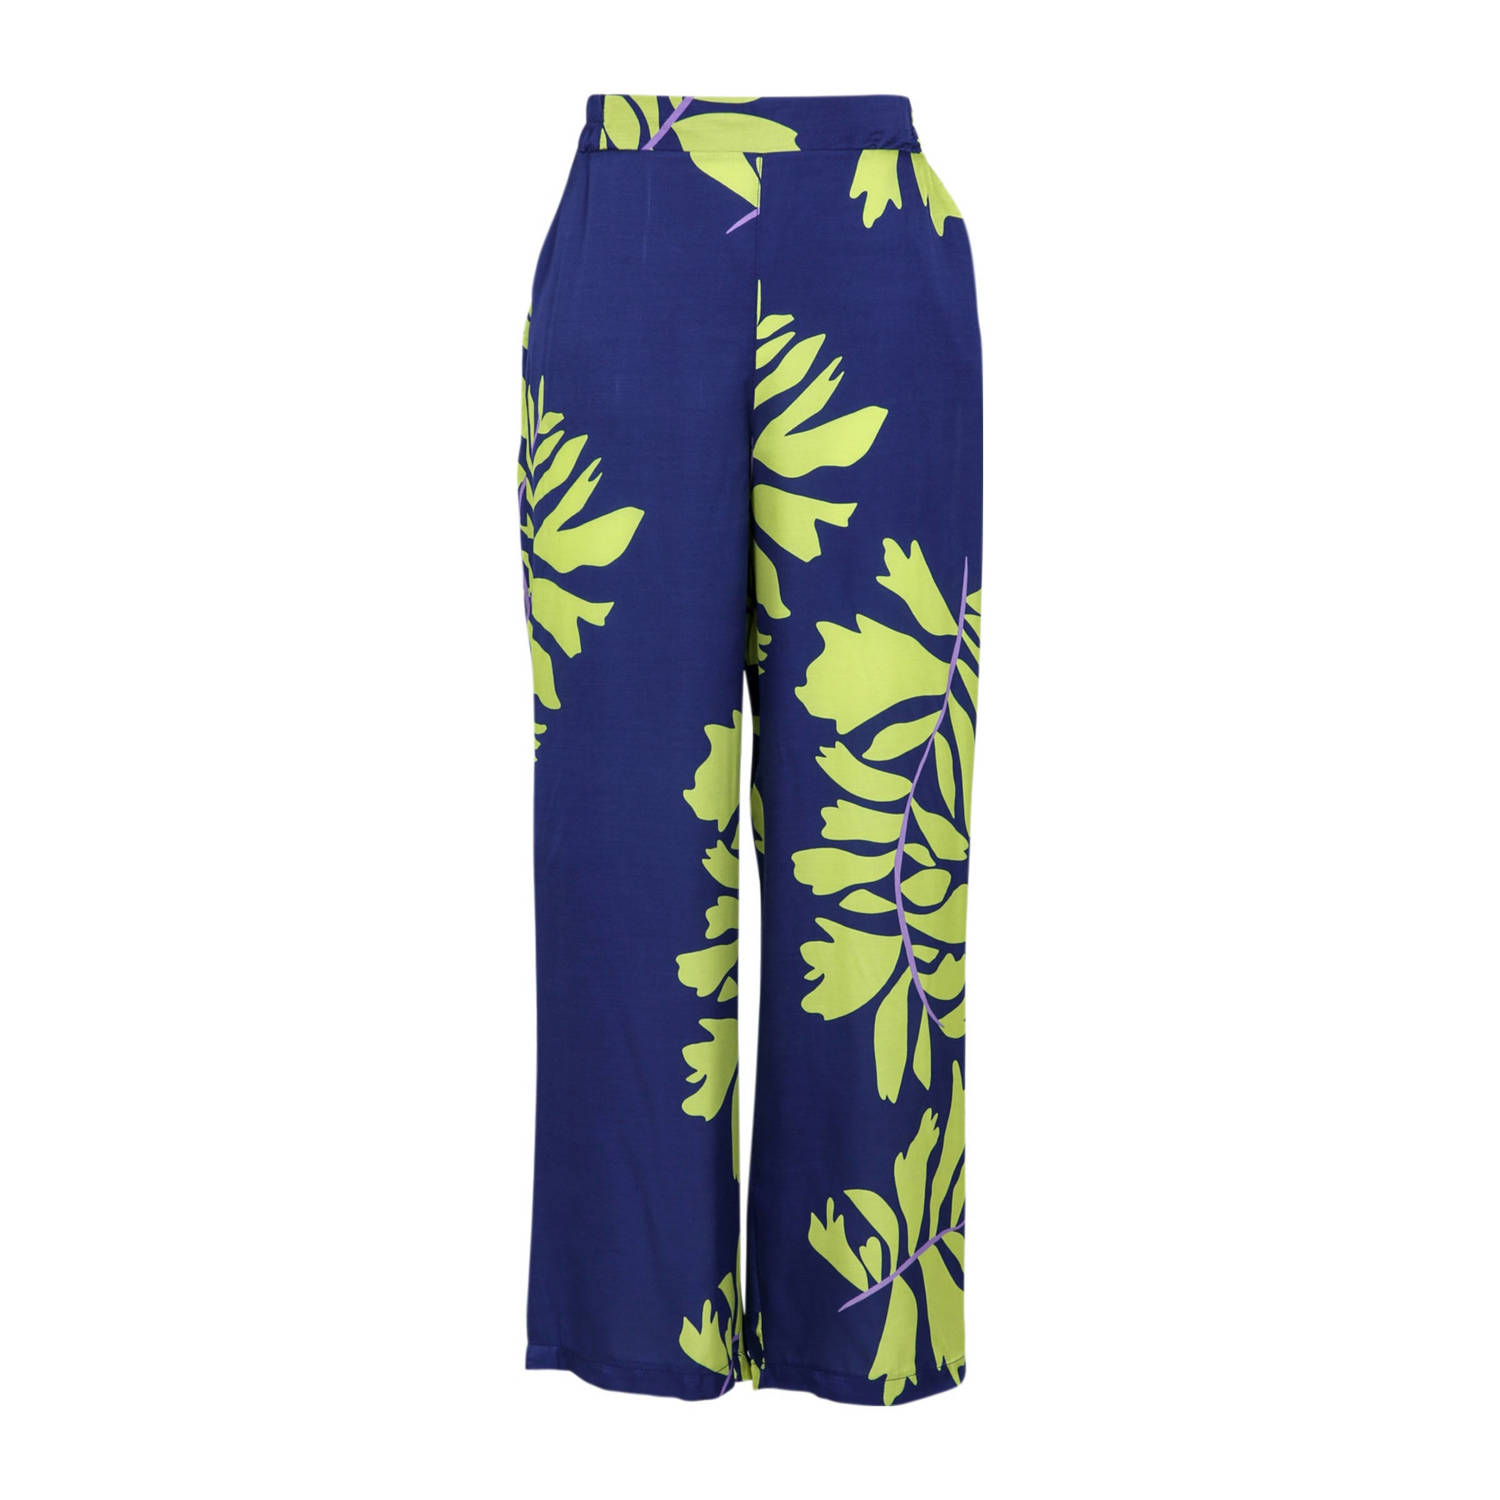 Cassis high waist wide leg pantalon met all over print donkerblauw limegroen